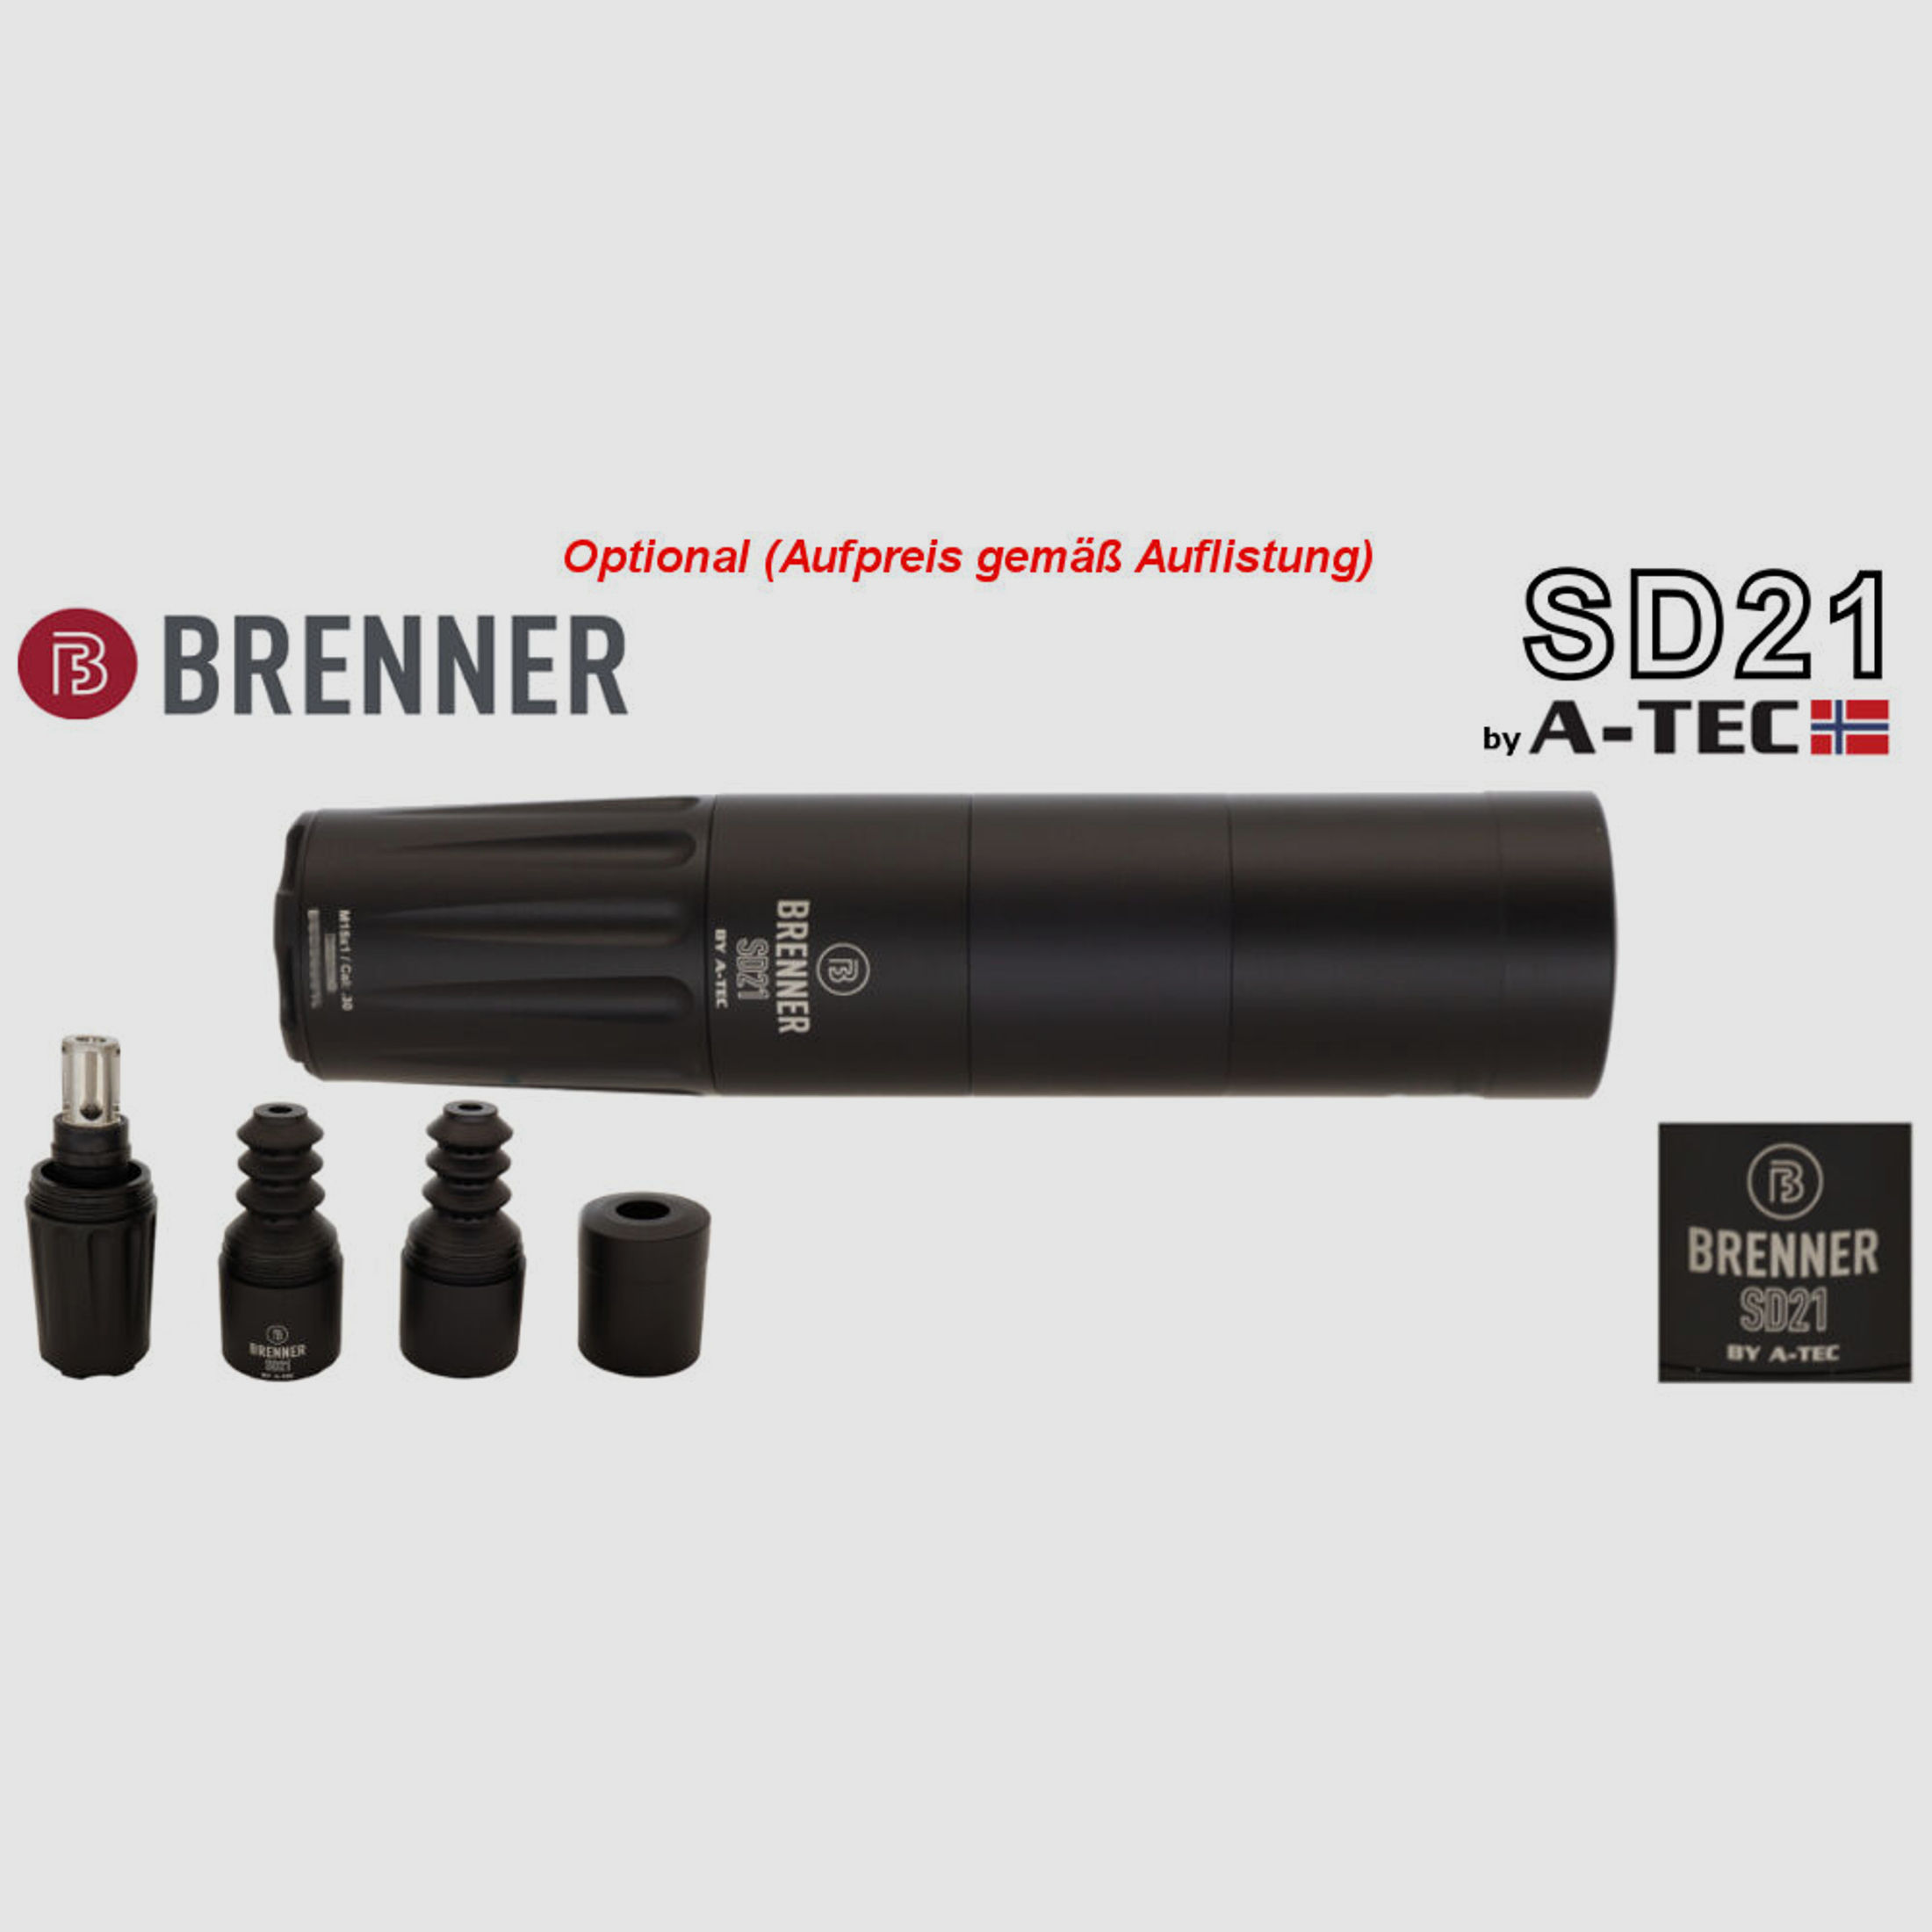 Brenner Komplettpaket:	 Brenner BR20 Holzschaft mit Bushnell 2.5-15x50 (m. Parallaxe Verstellung)